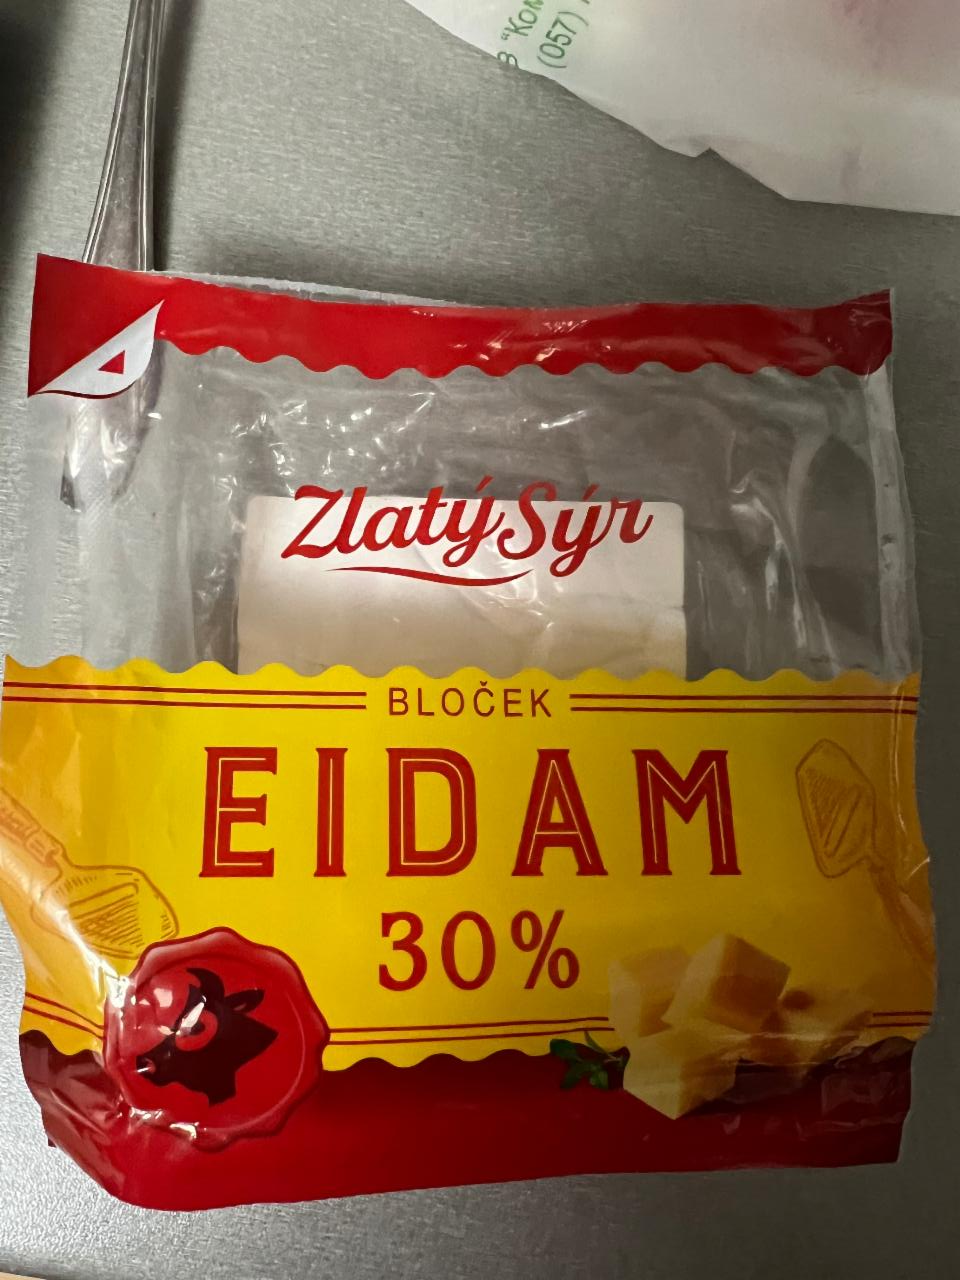 Фото - Eidam 30% bloček Zlatý sýr